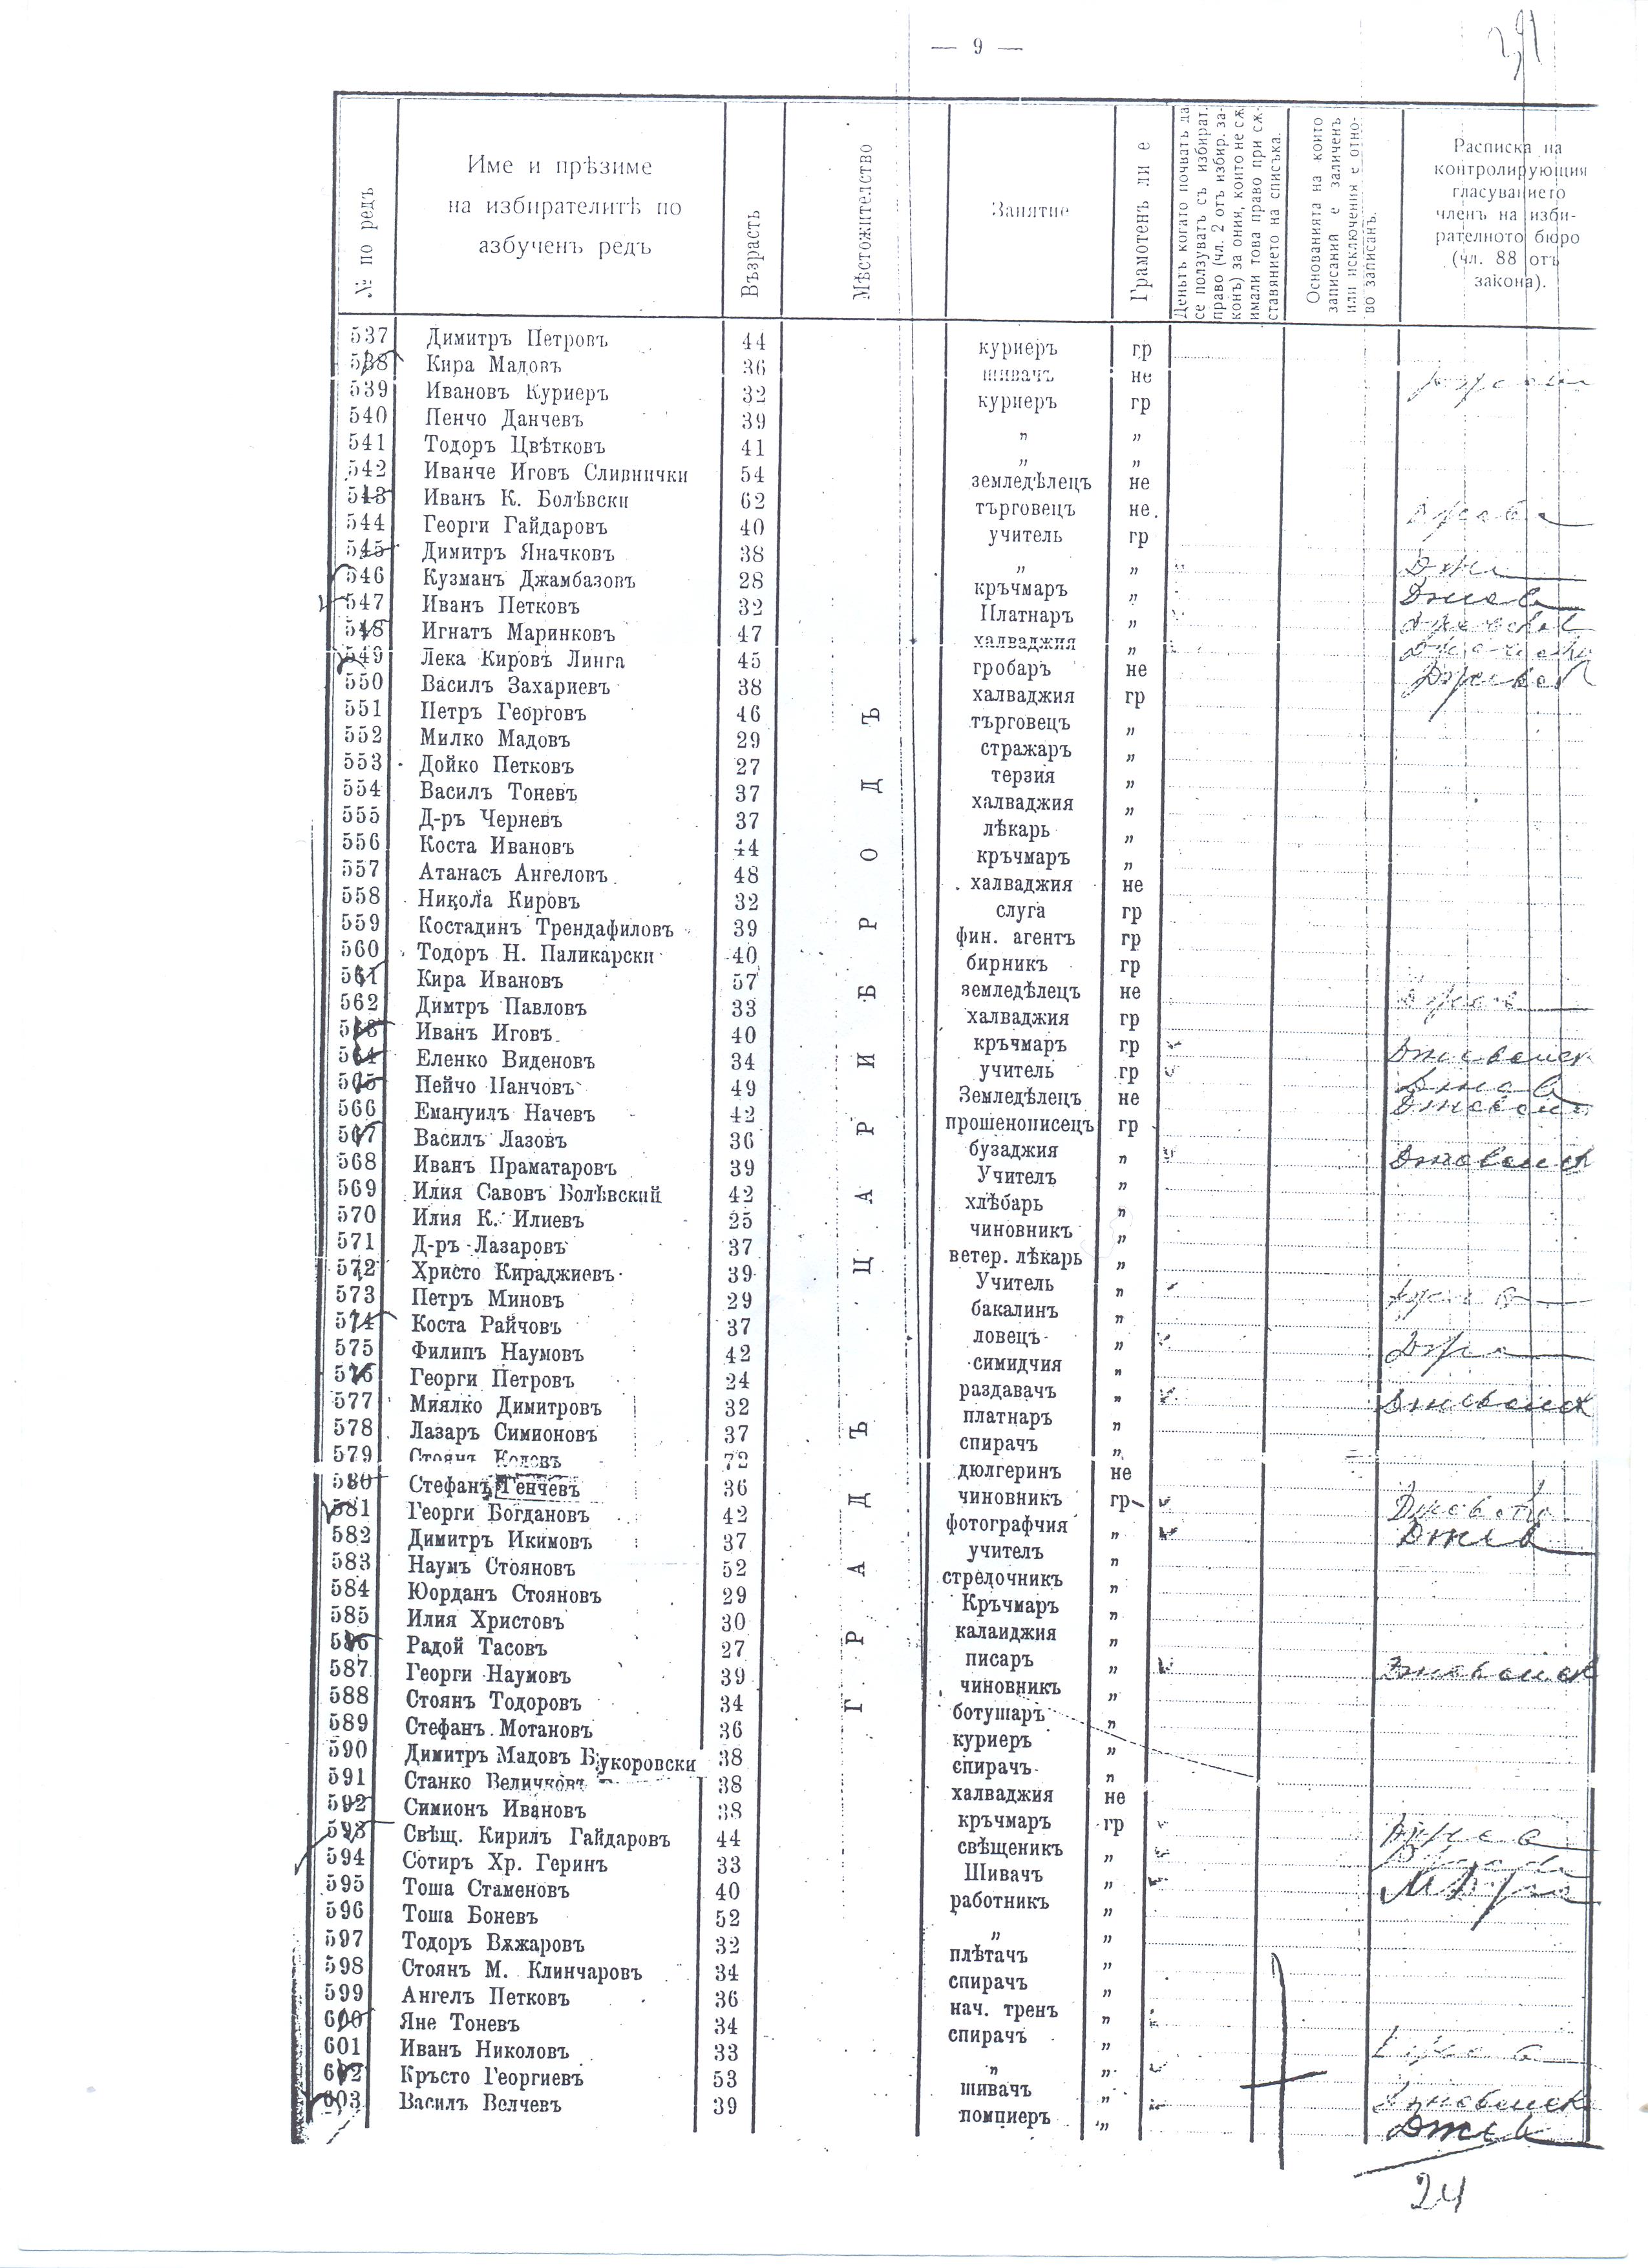 Избирателни списъци, стр. 9